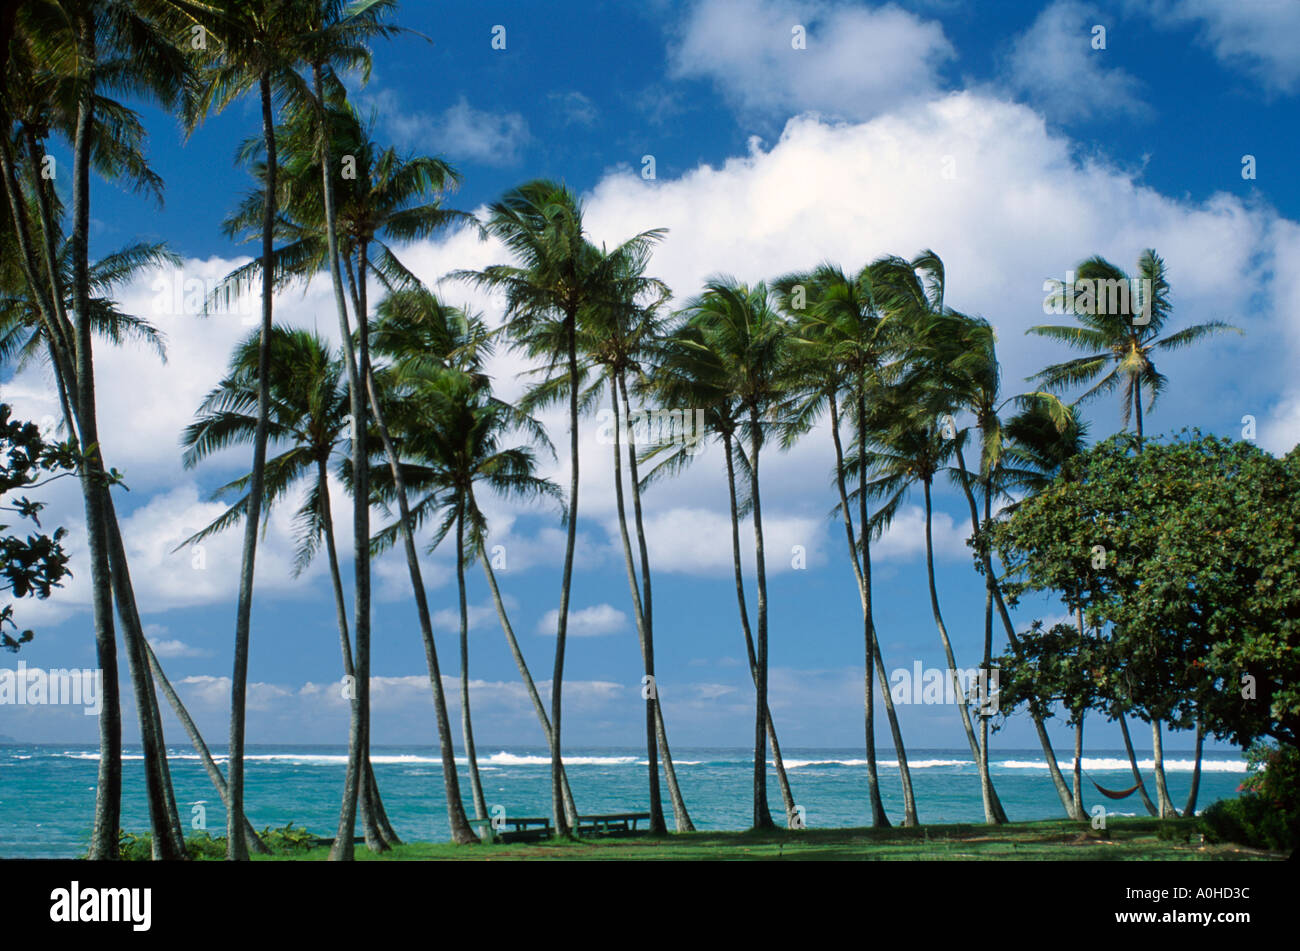 Hawaii, Hawaii-Inseln, Maui North Shore Spreckelsville Pazifikküste Palmen, Baum, tropisch, Tropen, Hängematte HI022, Tourismus, Reise, Reiseziel, Kultur, Stockfoto